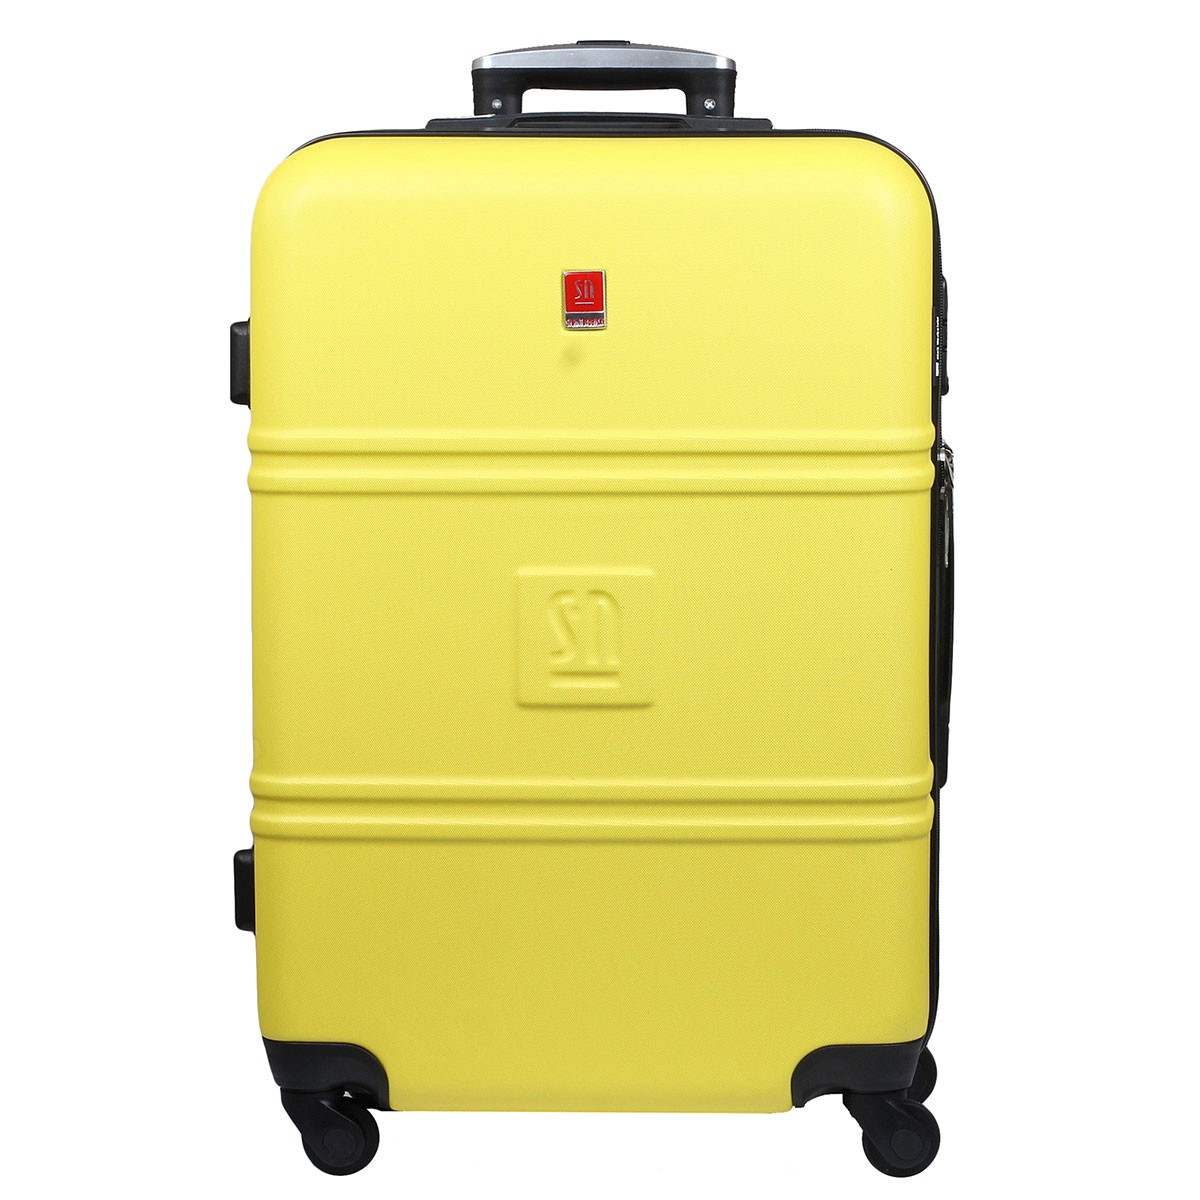 zolta-walizka-duza-ABS-04-0401S-06-2023.jpg